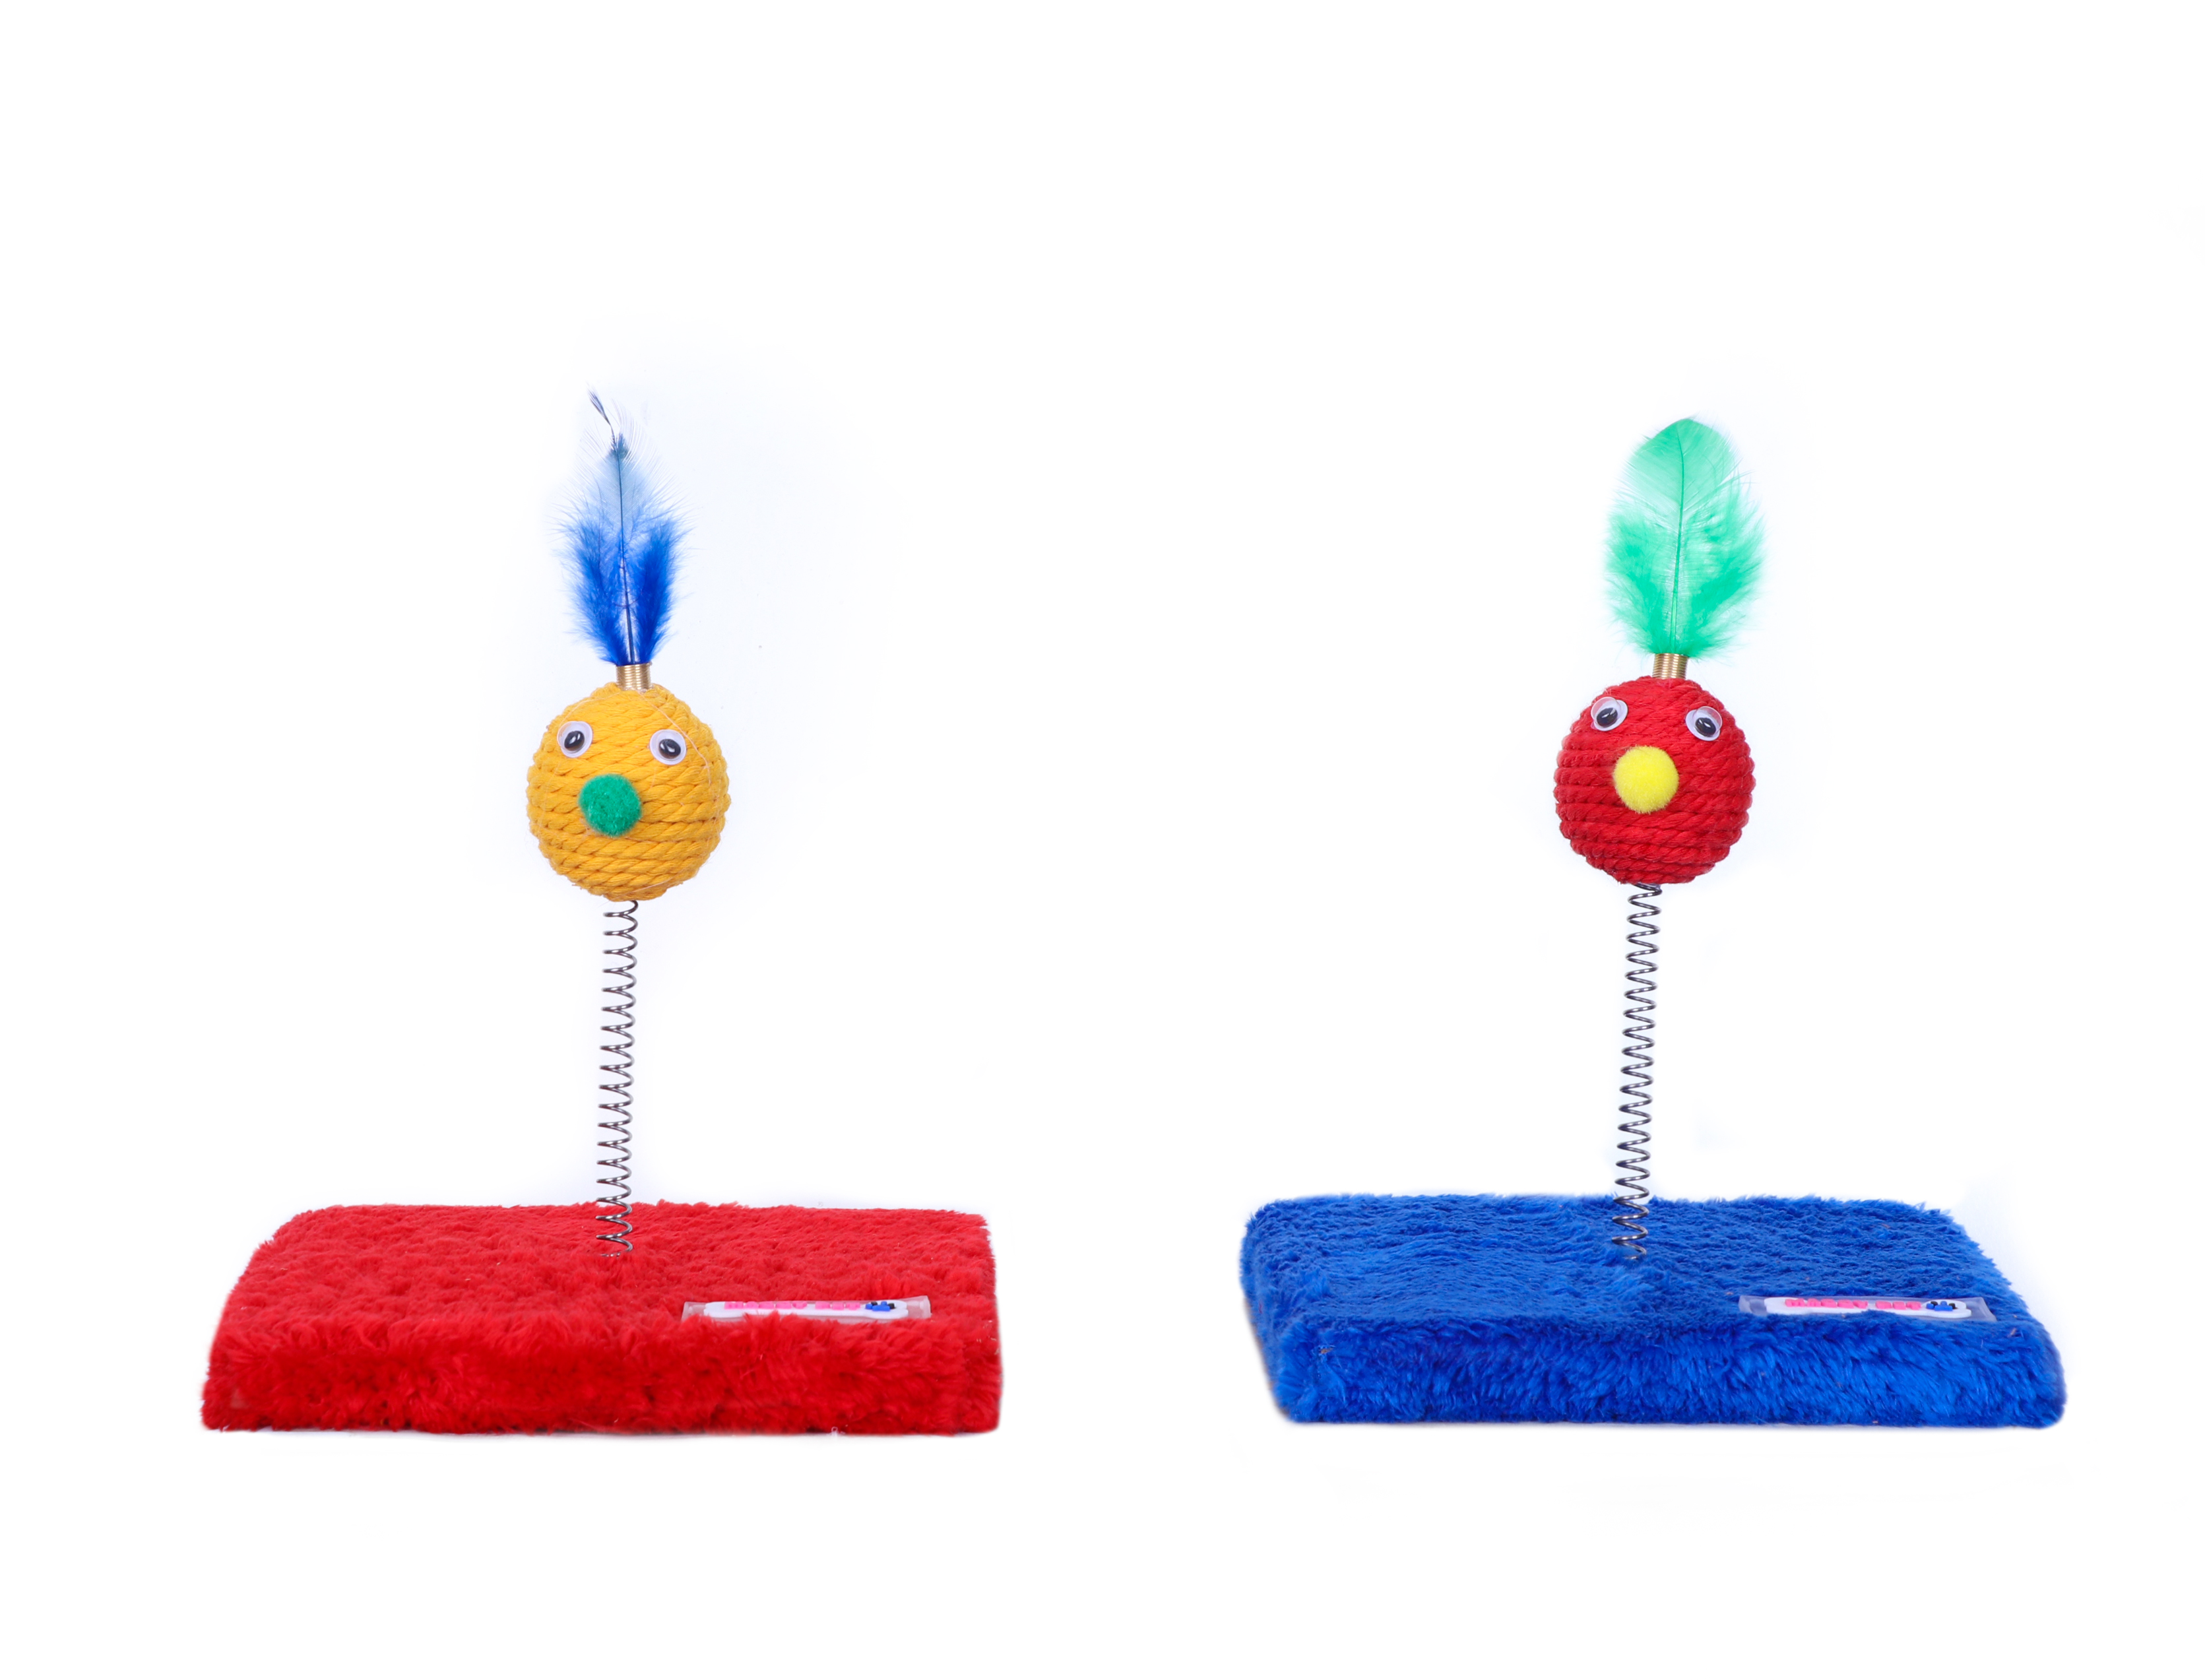 اسکرچر و اسباب بازی گربه مدل تک فنر رنگ آبی